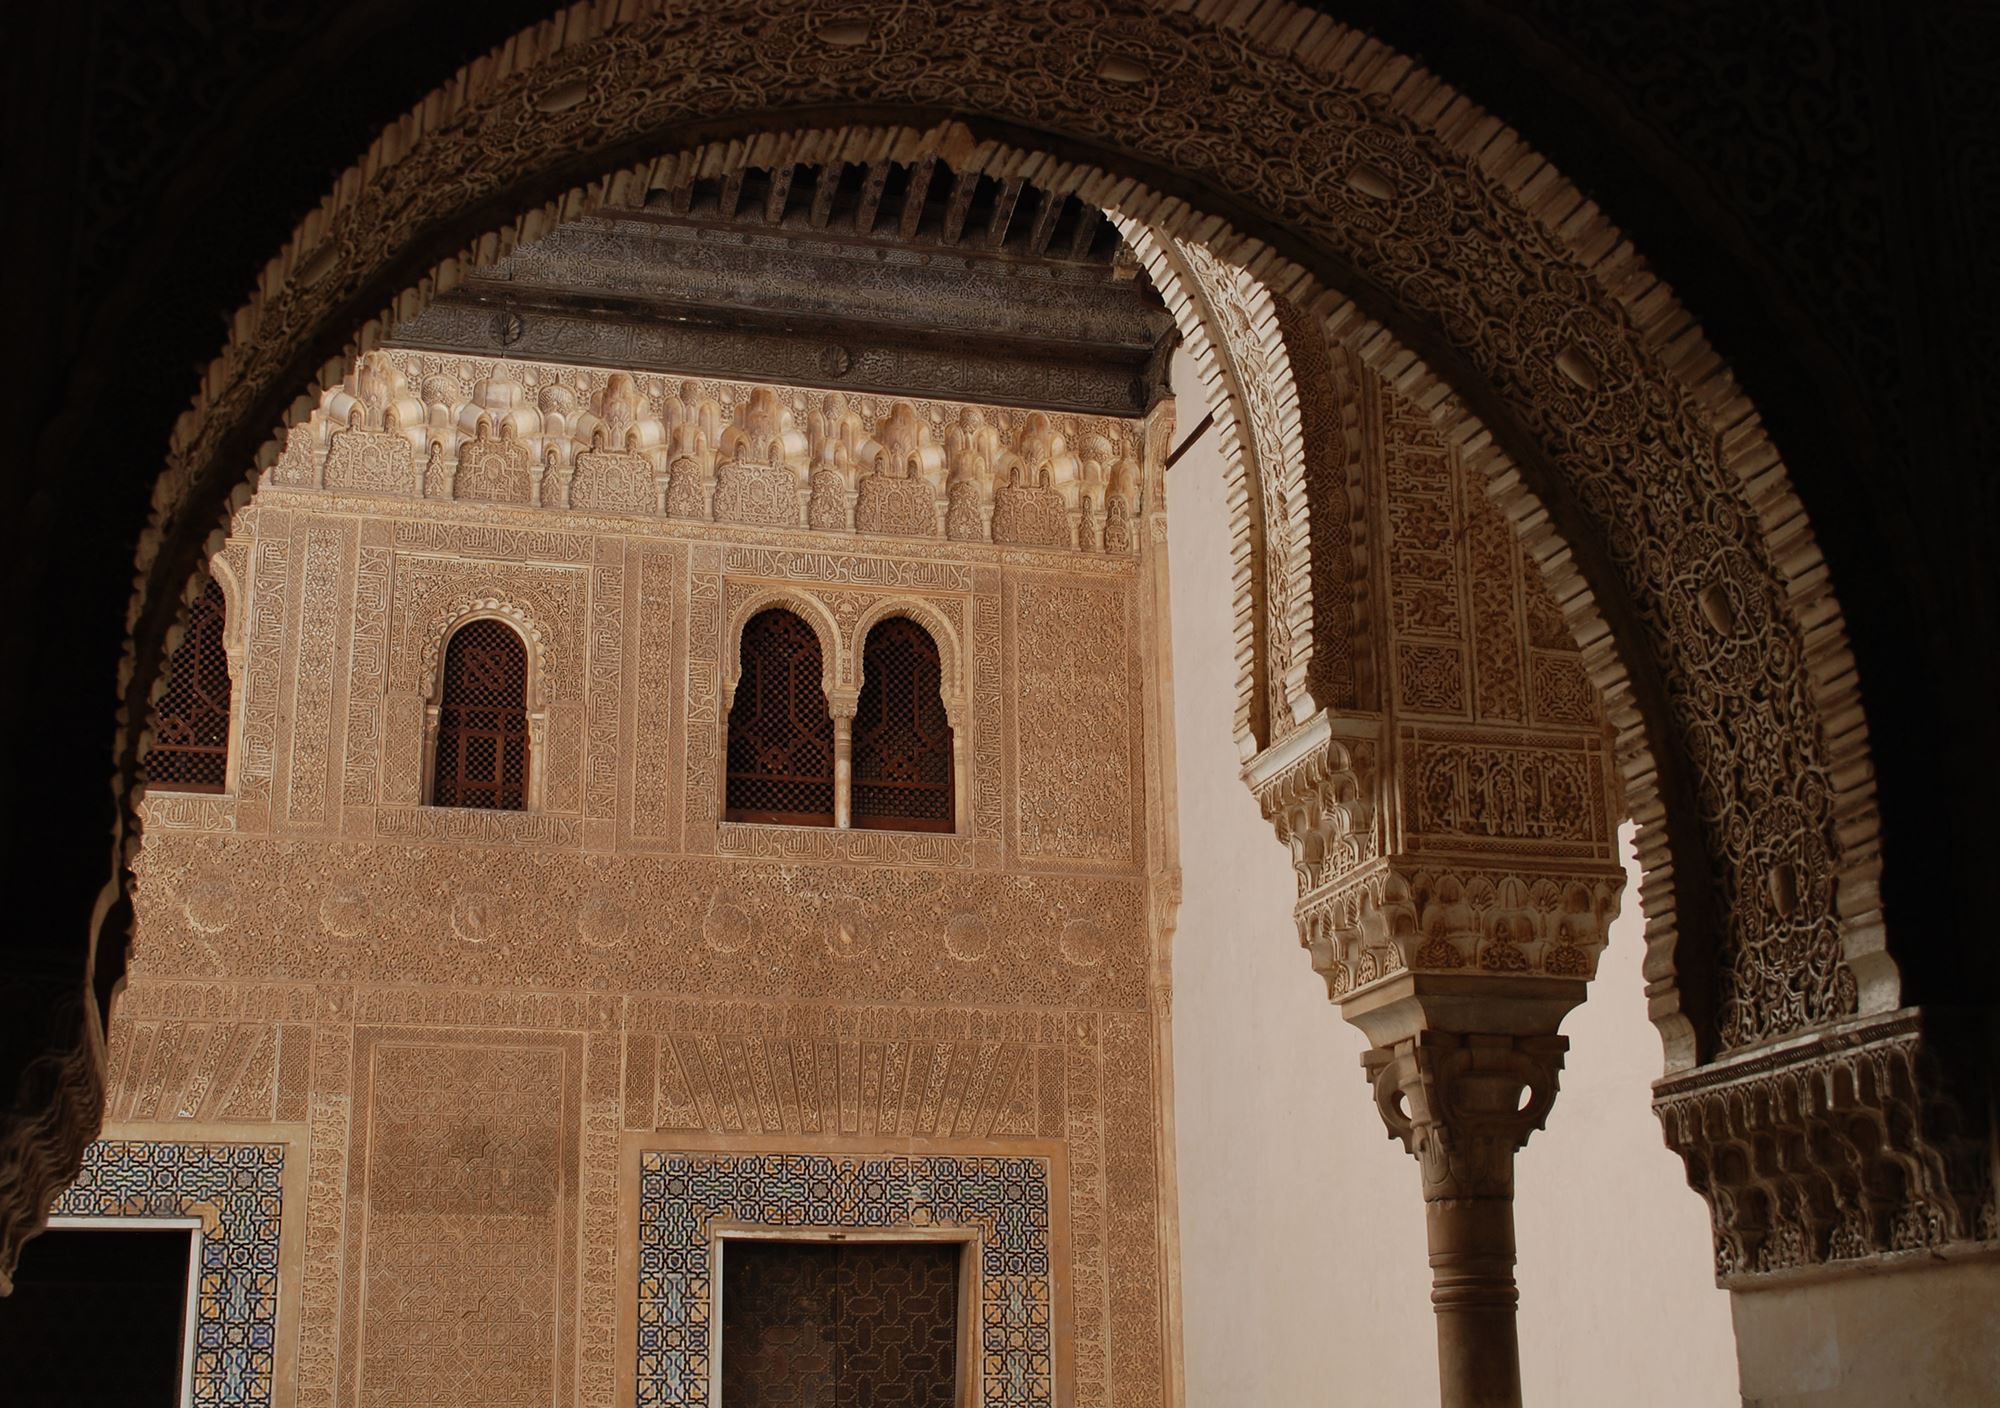 prenotare prenota prenotazione visite guidate guida visita guidata tour privata all’Alhambra e al Generalife